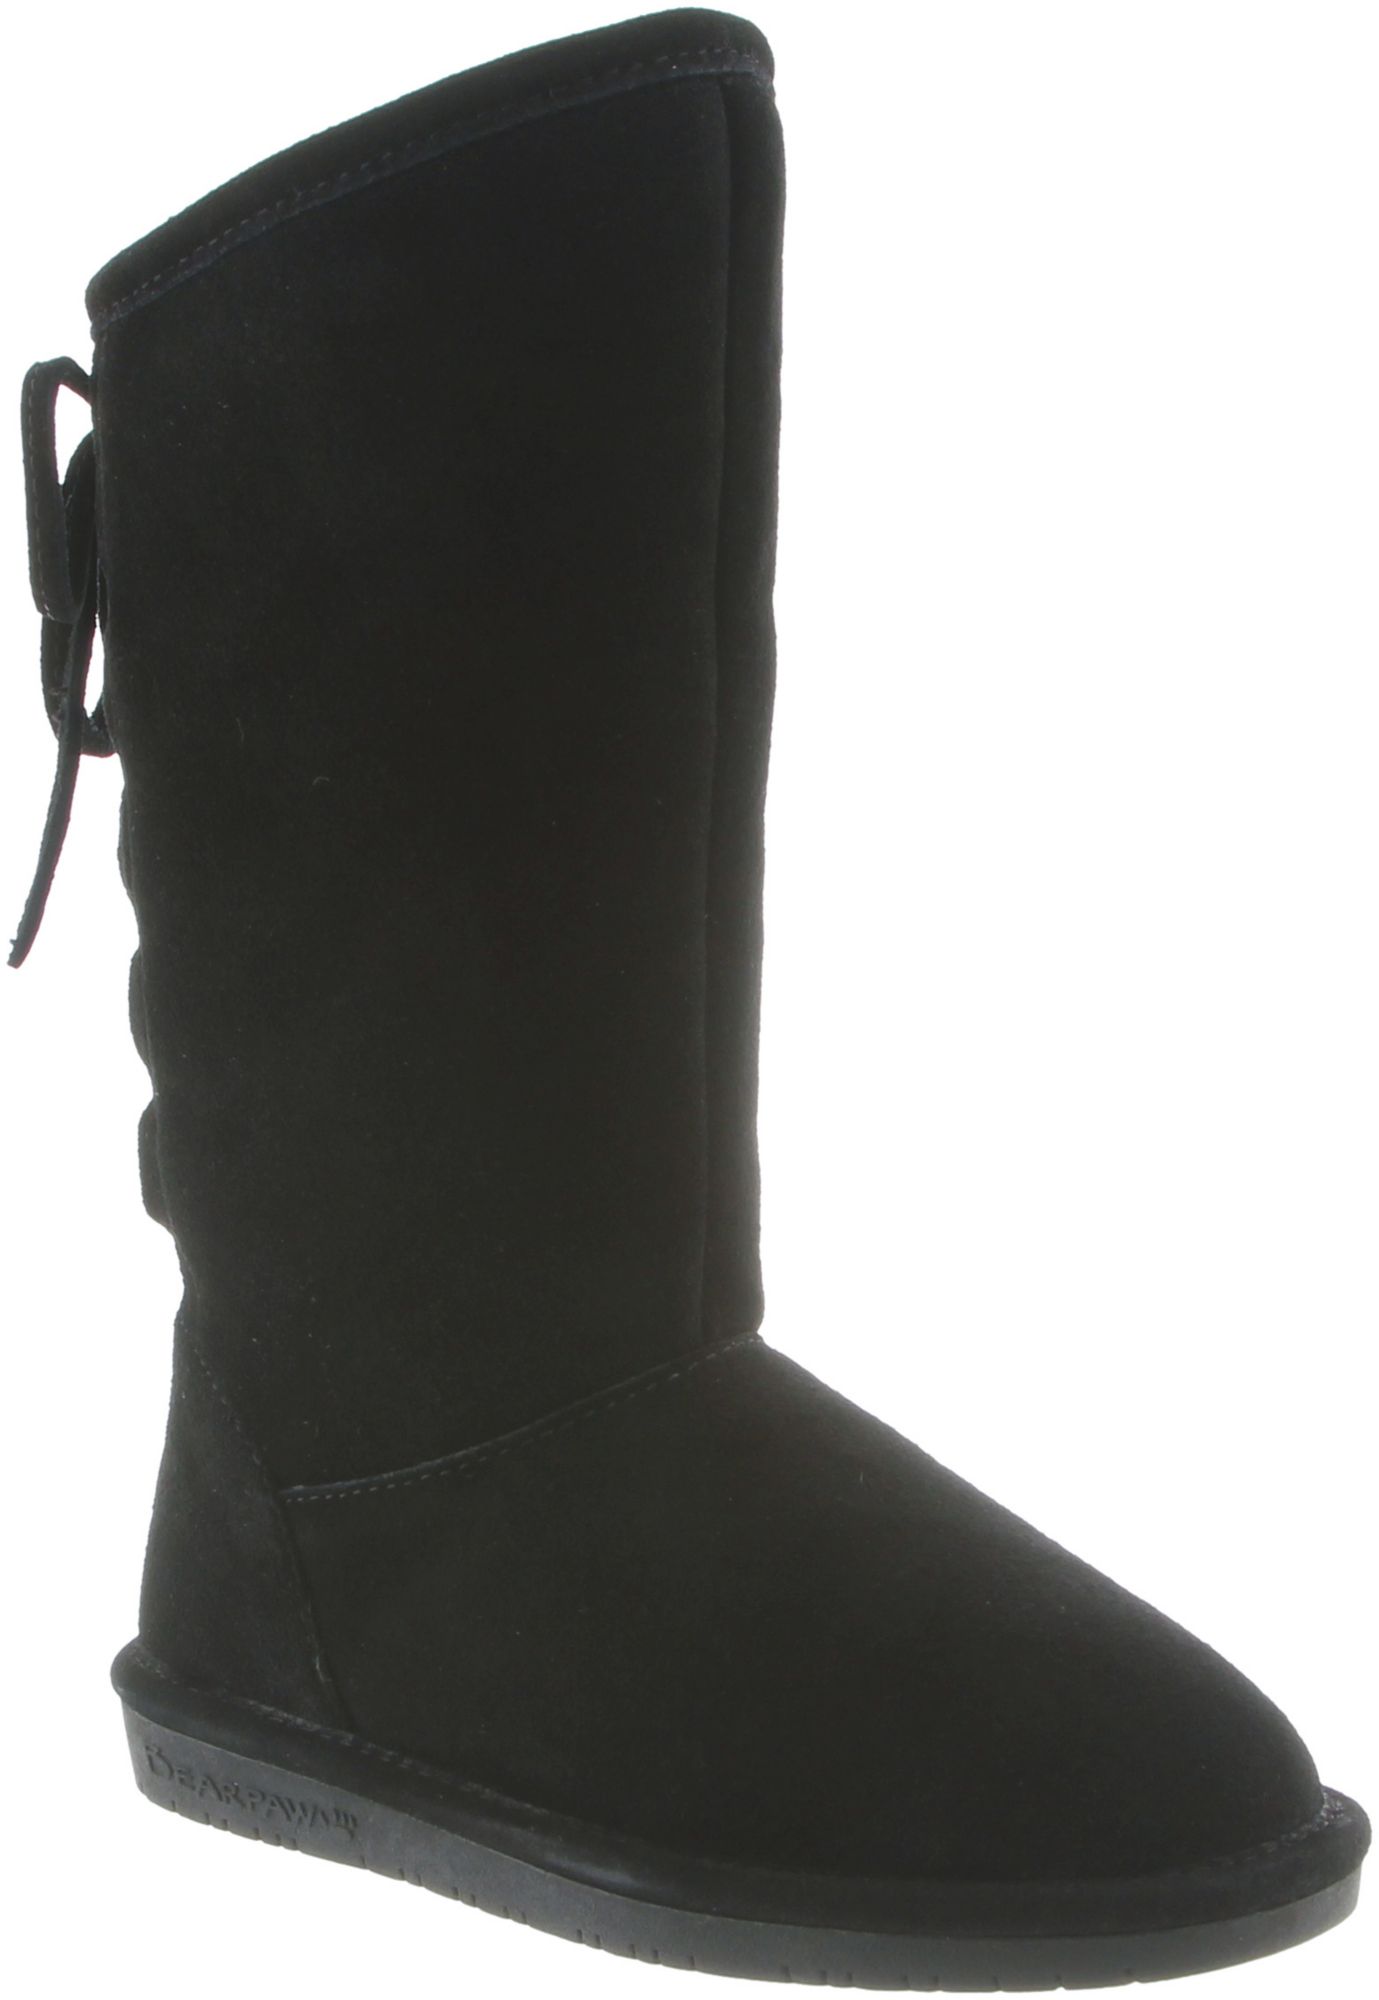 BEARPAW Women's Phylly II Winter Boots